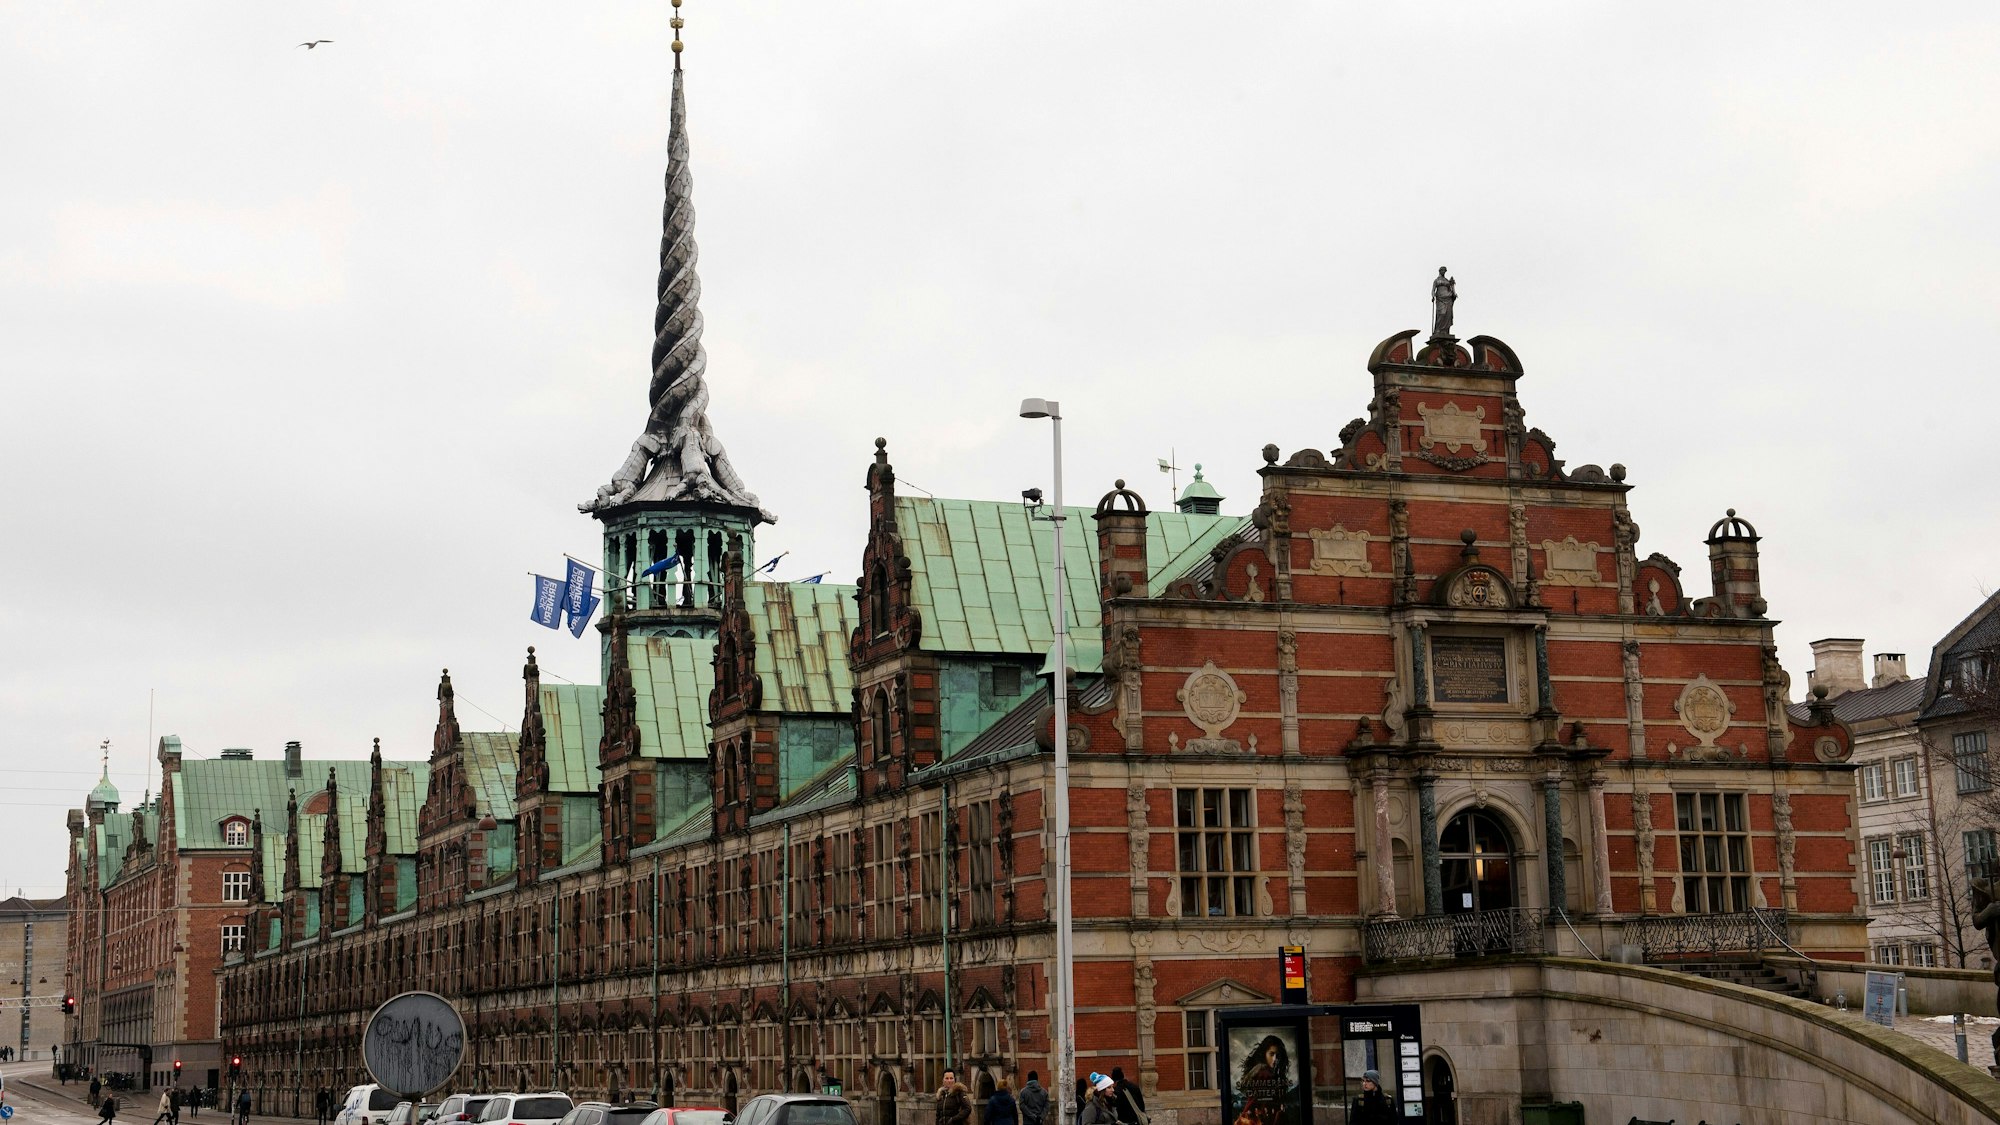 Ein Blick auf die Alte Börse in Kopenhagen. Eines der ältesten Gebäude Kopenhagens brennt am Dienstag und seine ikonische Turmspitze ist eingestürzt.